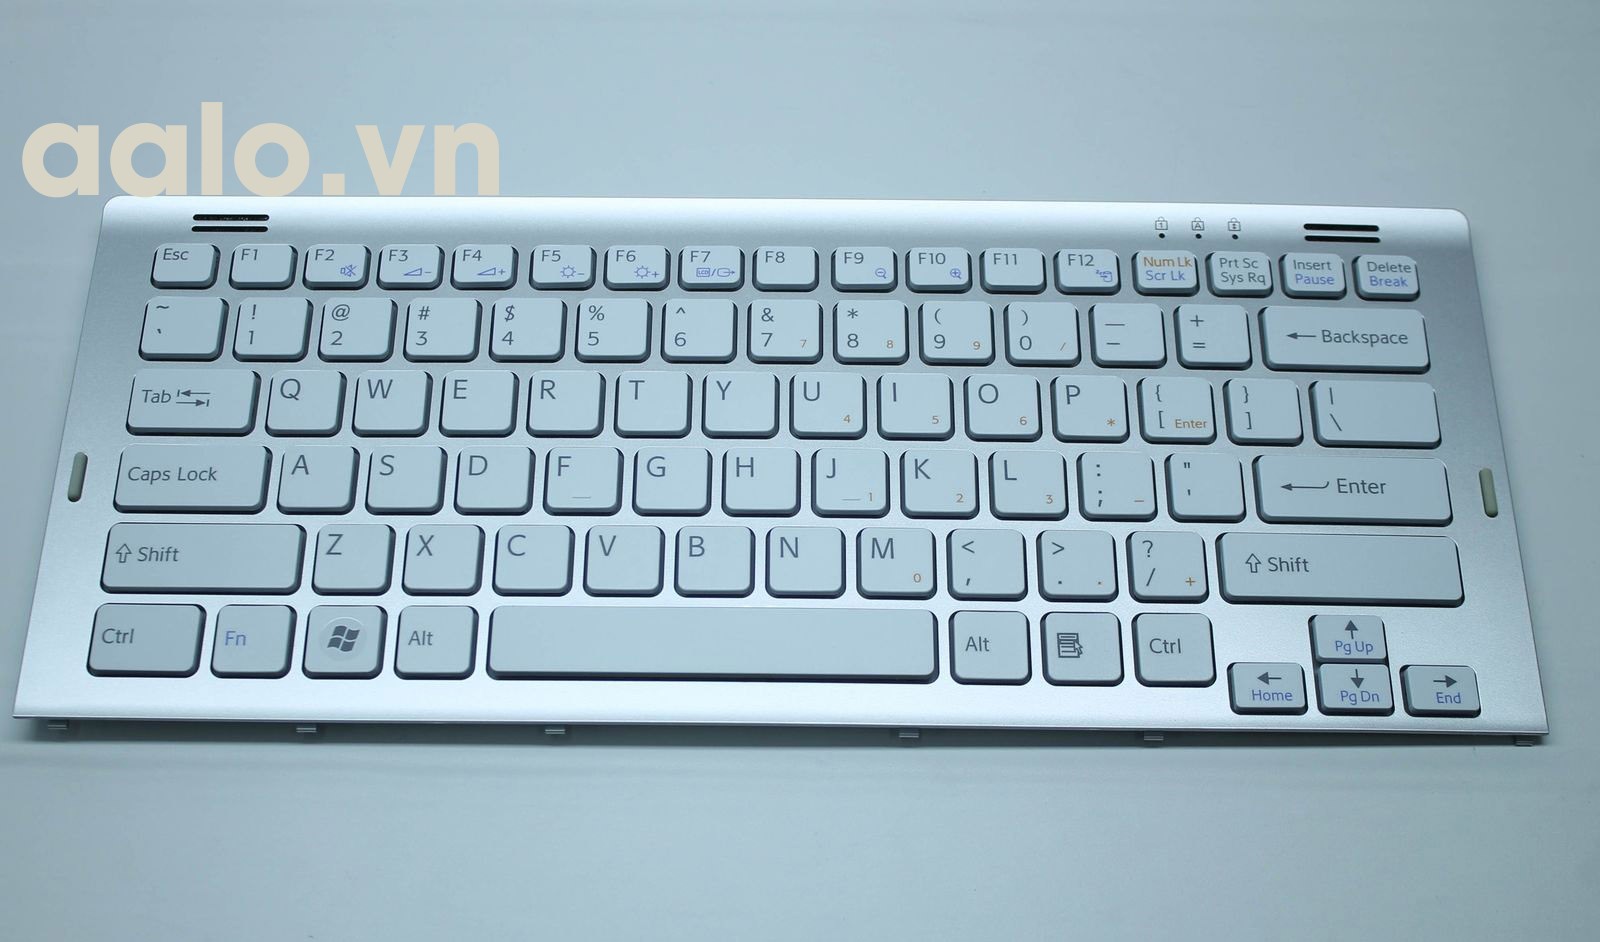 Bàn phím laptop Sony Vaio VGN - BZ - Keyboard Sony